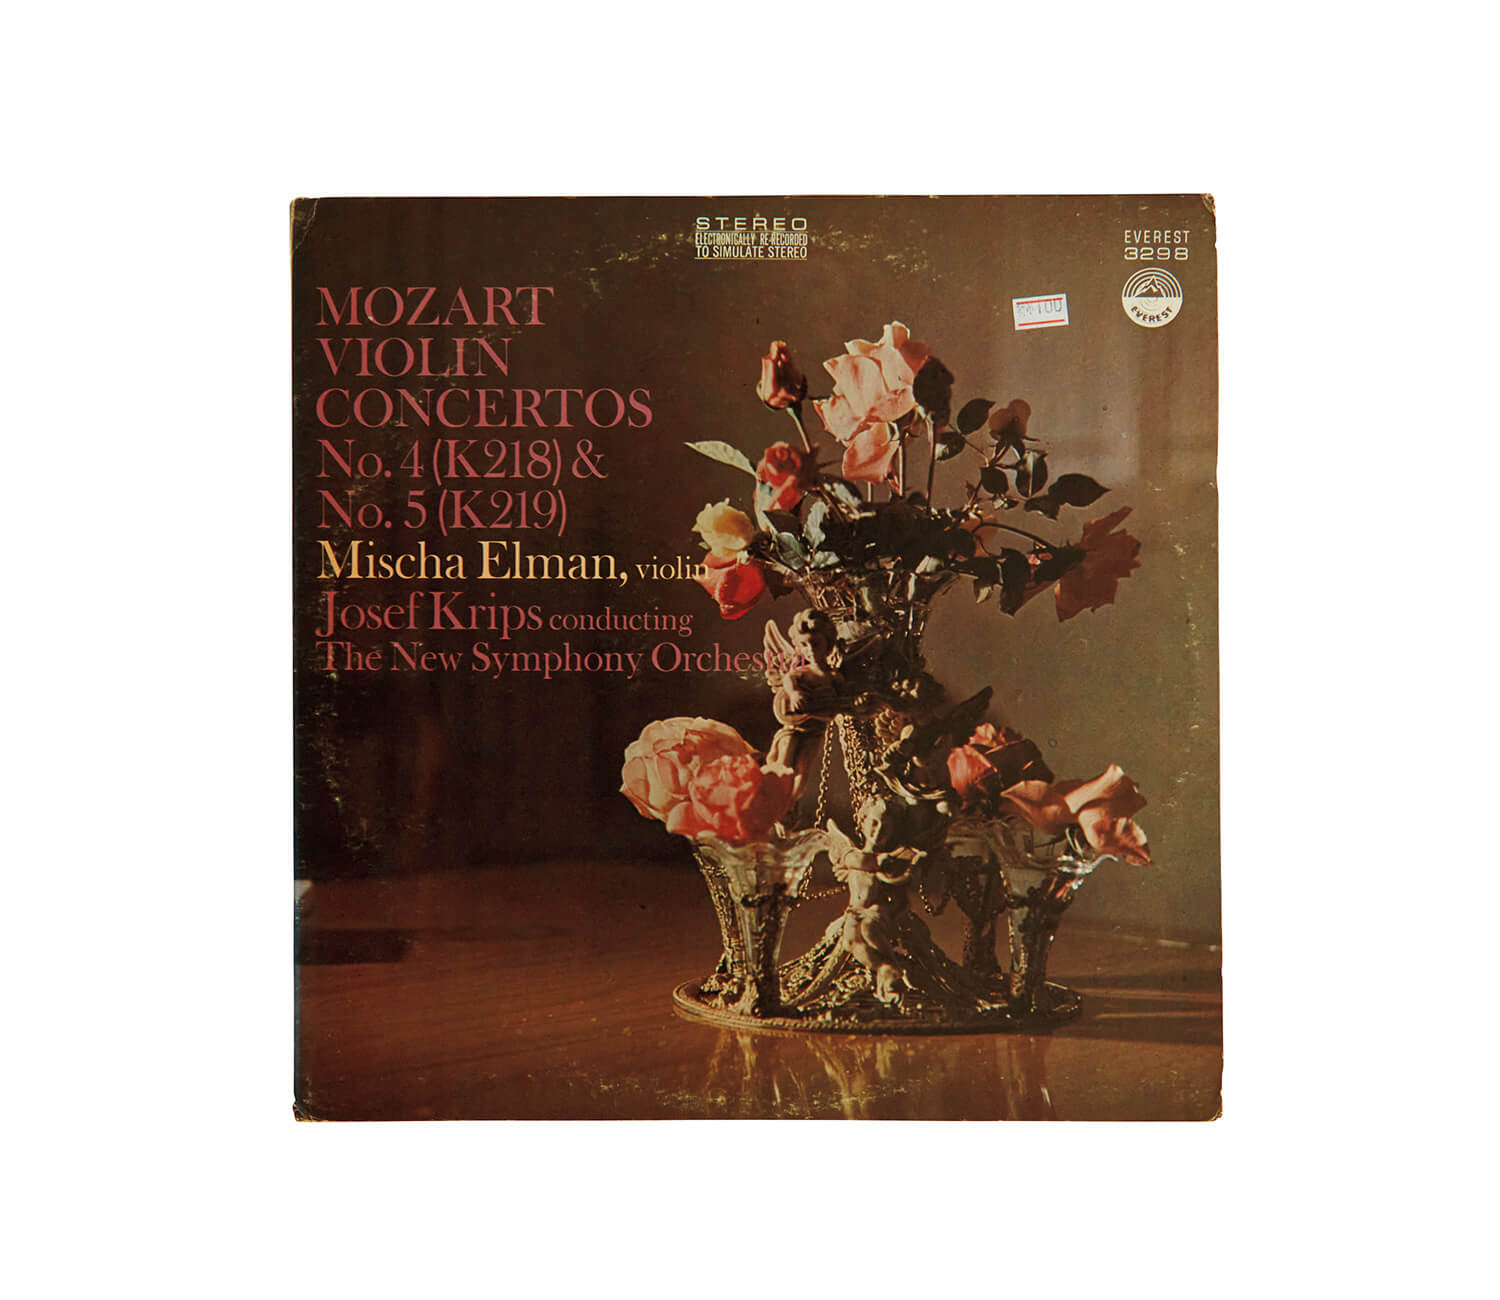 ミシャ・エルマンが演奏した、モーツァルト「ヴァイオリン協奏曲第5番 イ長調」レコードジャケット